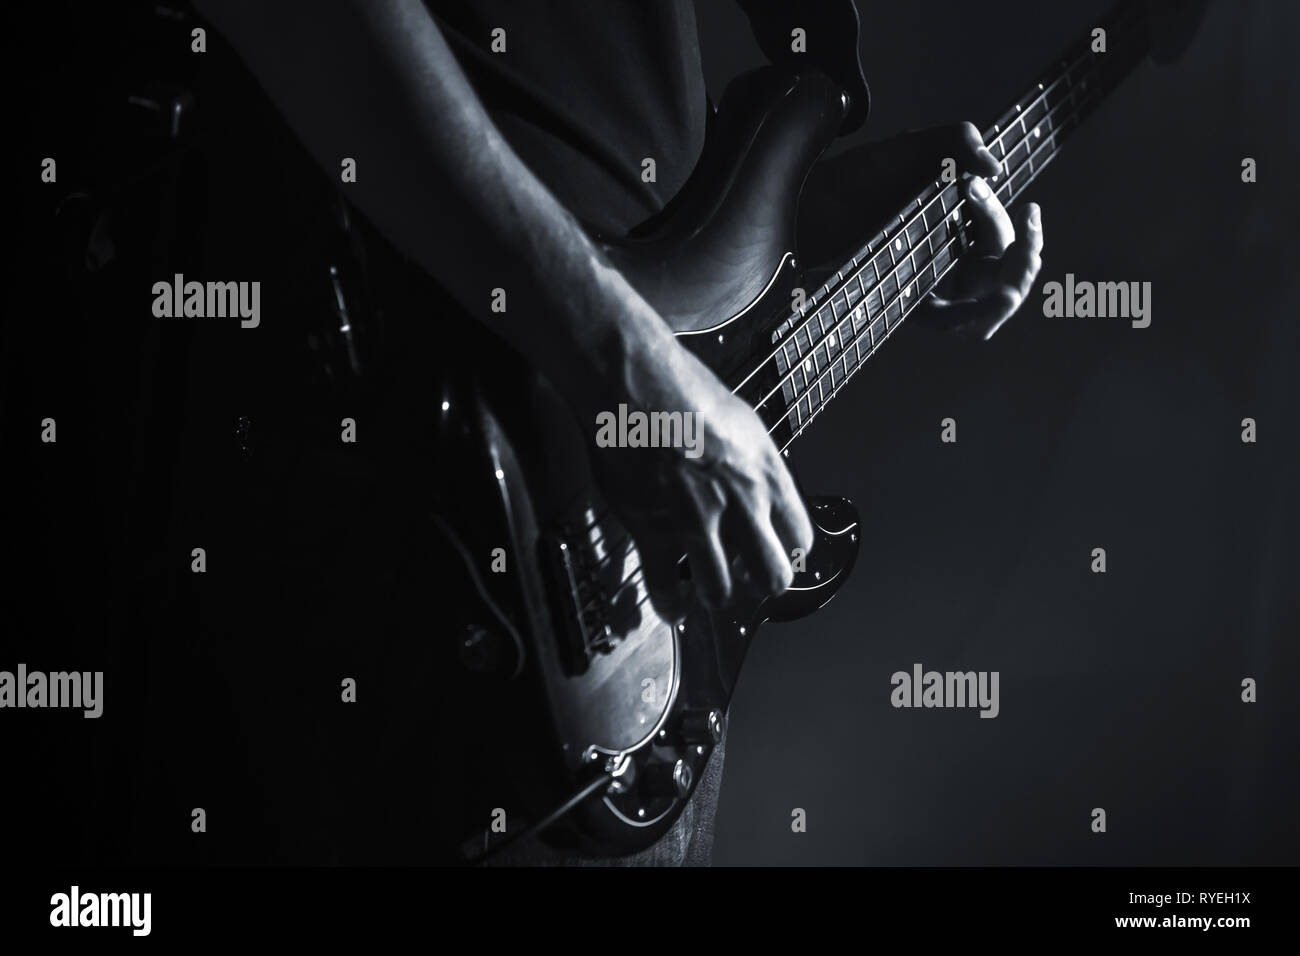 Guitare basse électrique player mains, musique en thème, close-up photo en noir et blanc Banque D'Images